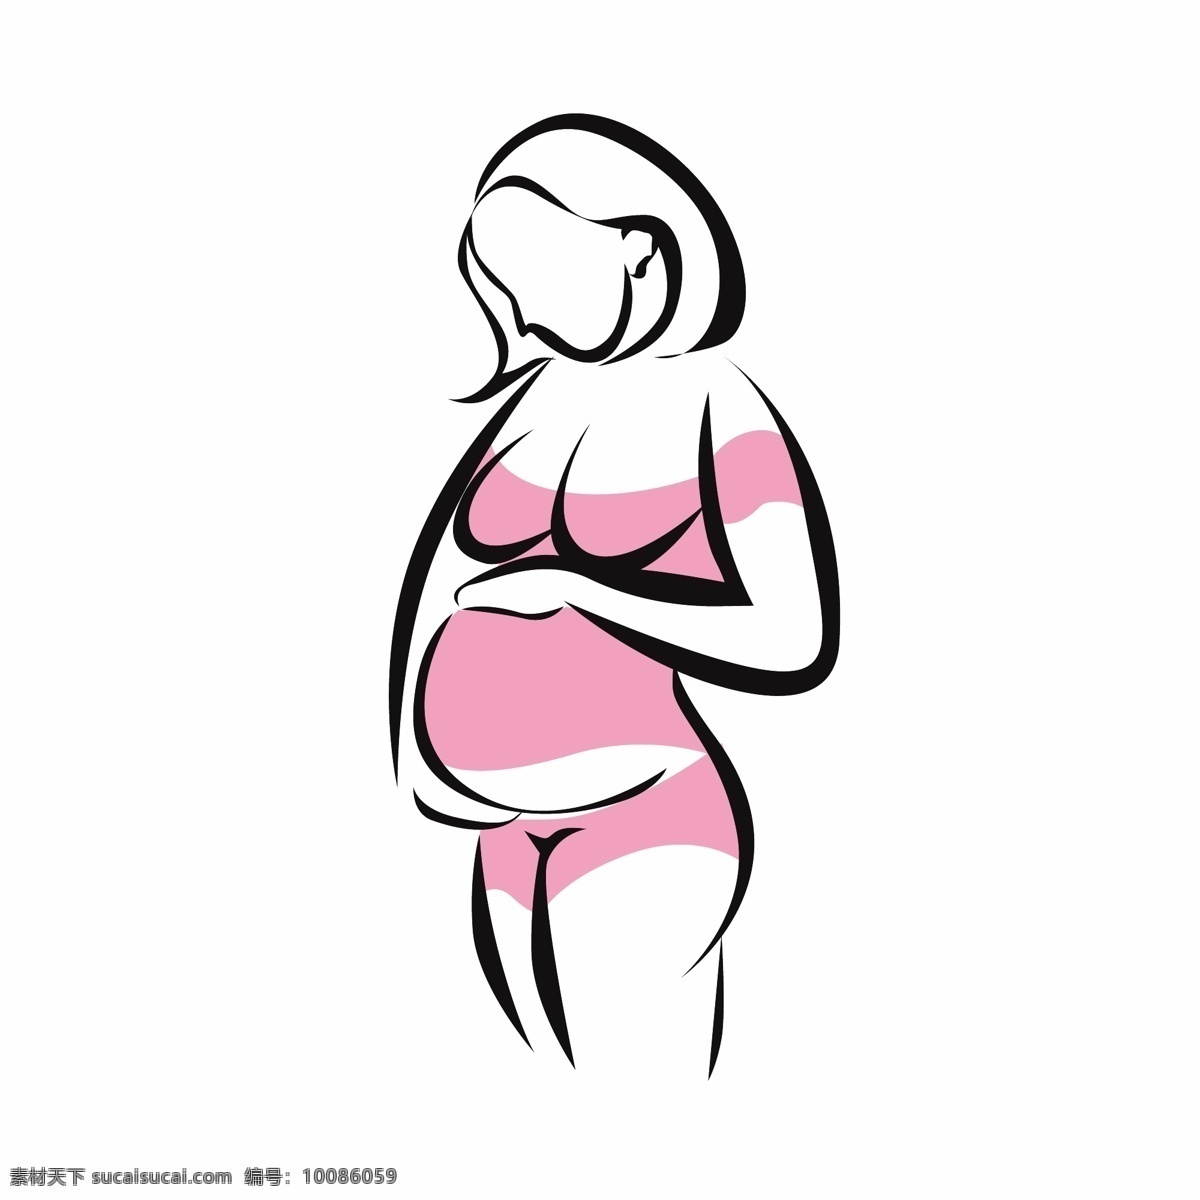 创意 简约 卡通 可爱 免扣素材 手绘 线条 孕妇 图案 矢量